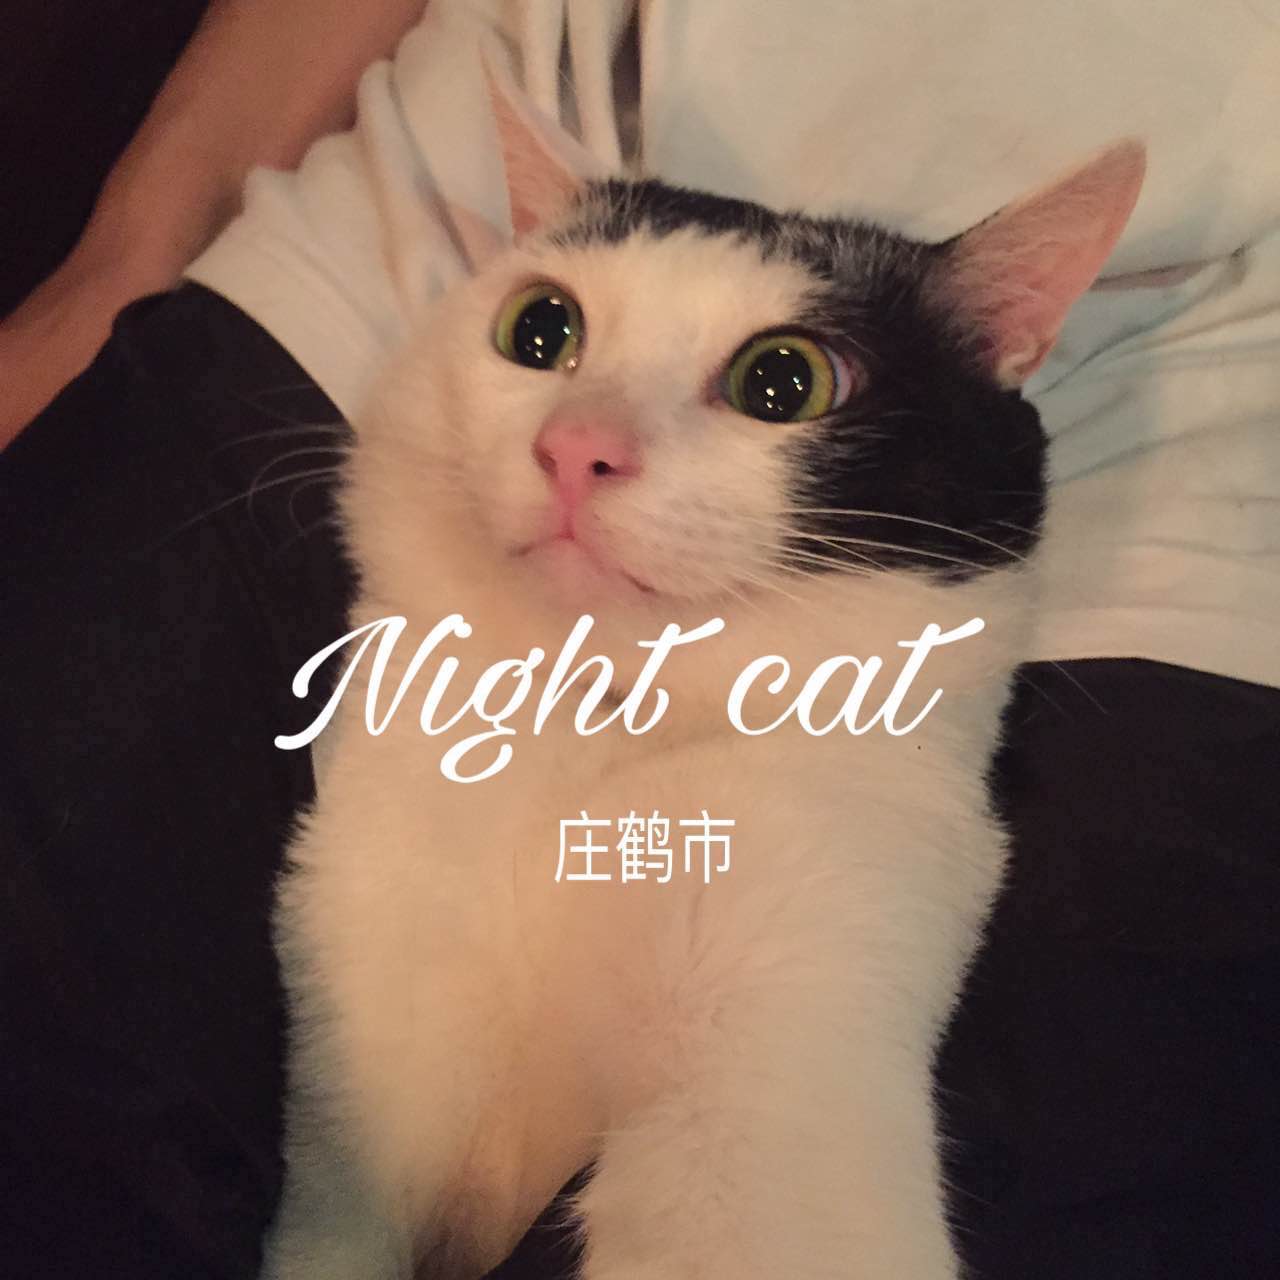 Night cat prod by shang xian sheng